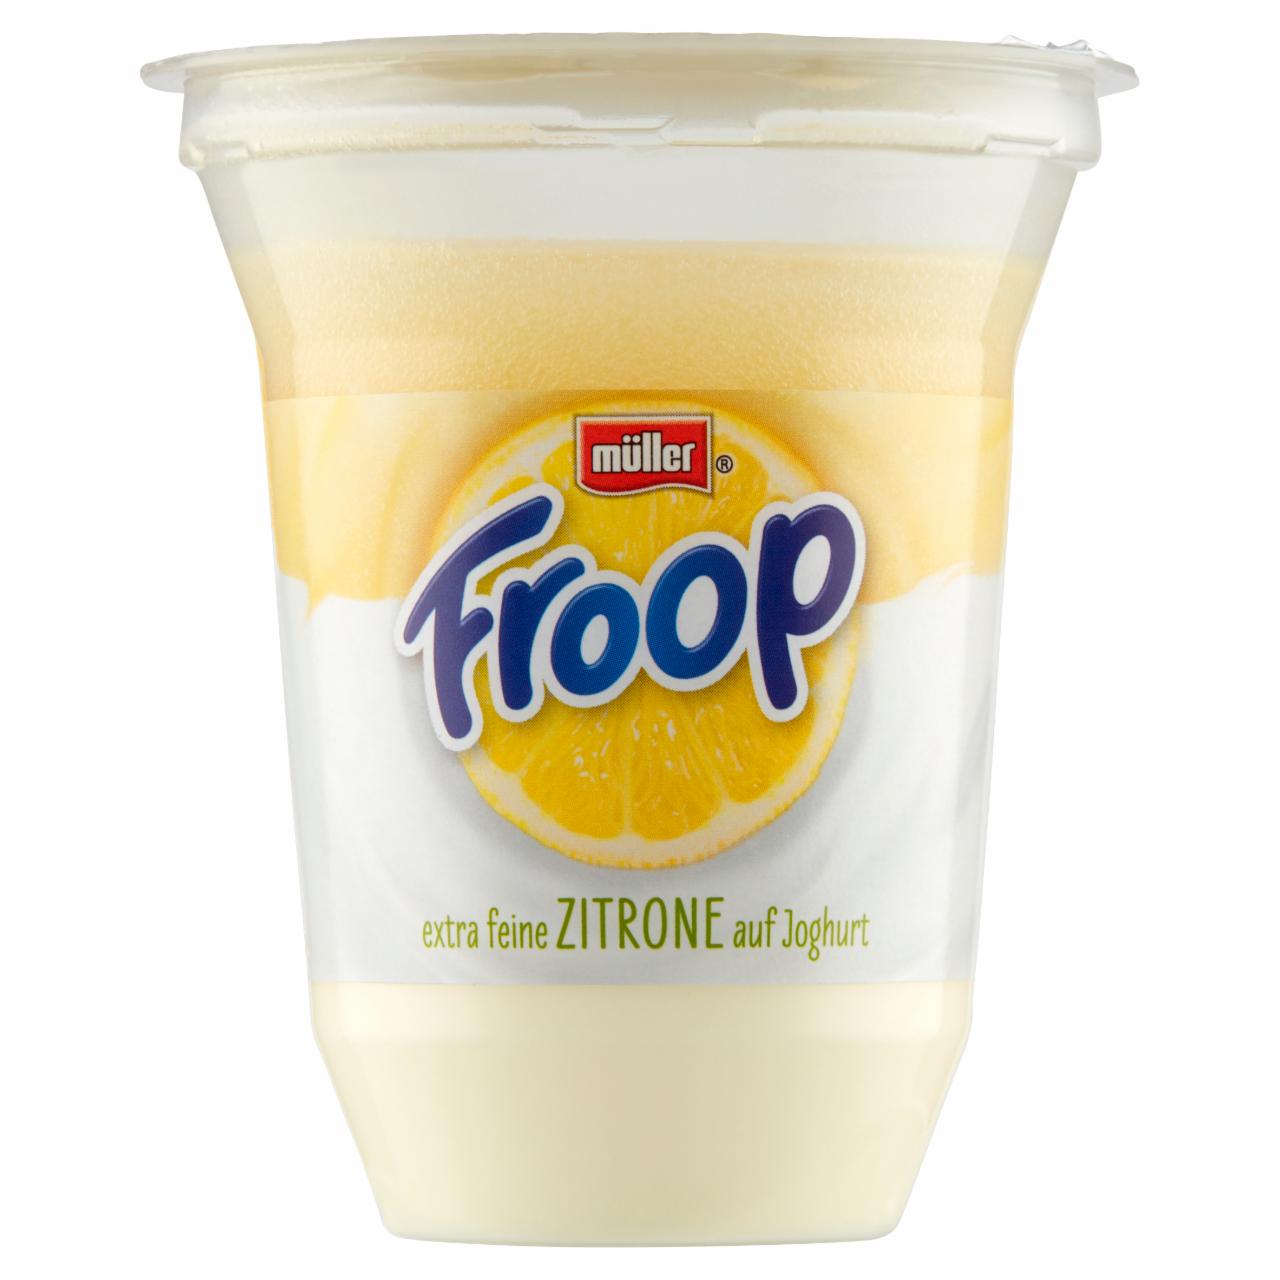 cytrynowym jogurtu 150 kJ - mleczny na wsadem i smaku wartości o odżywcze kalorie, Müller z owocowym g Froop Produkt bazie